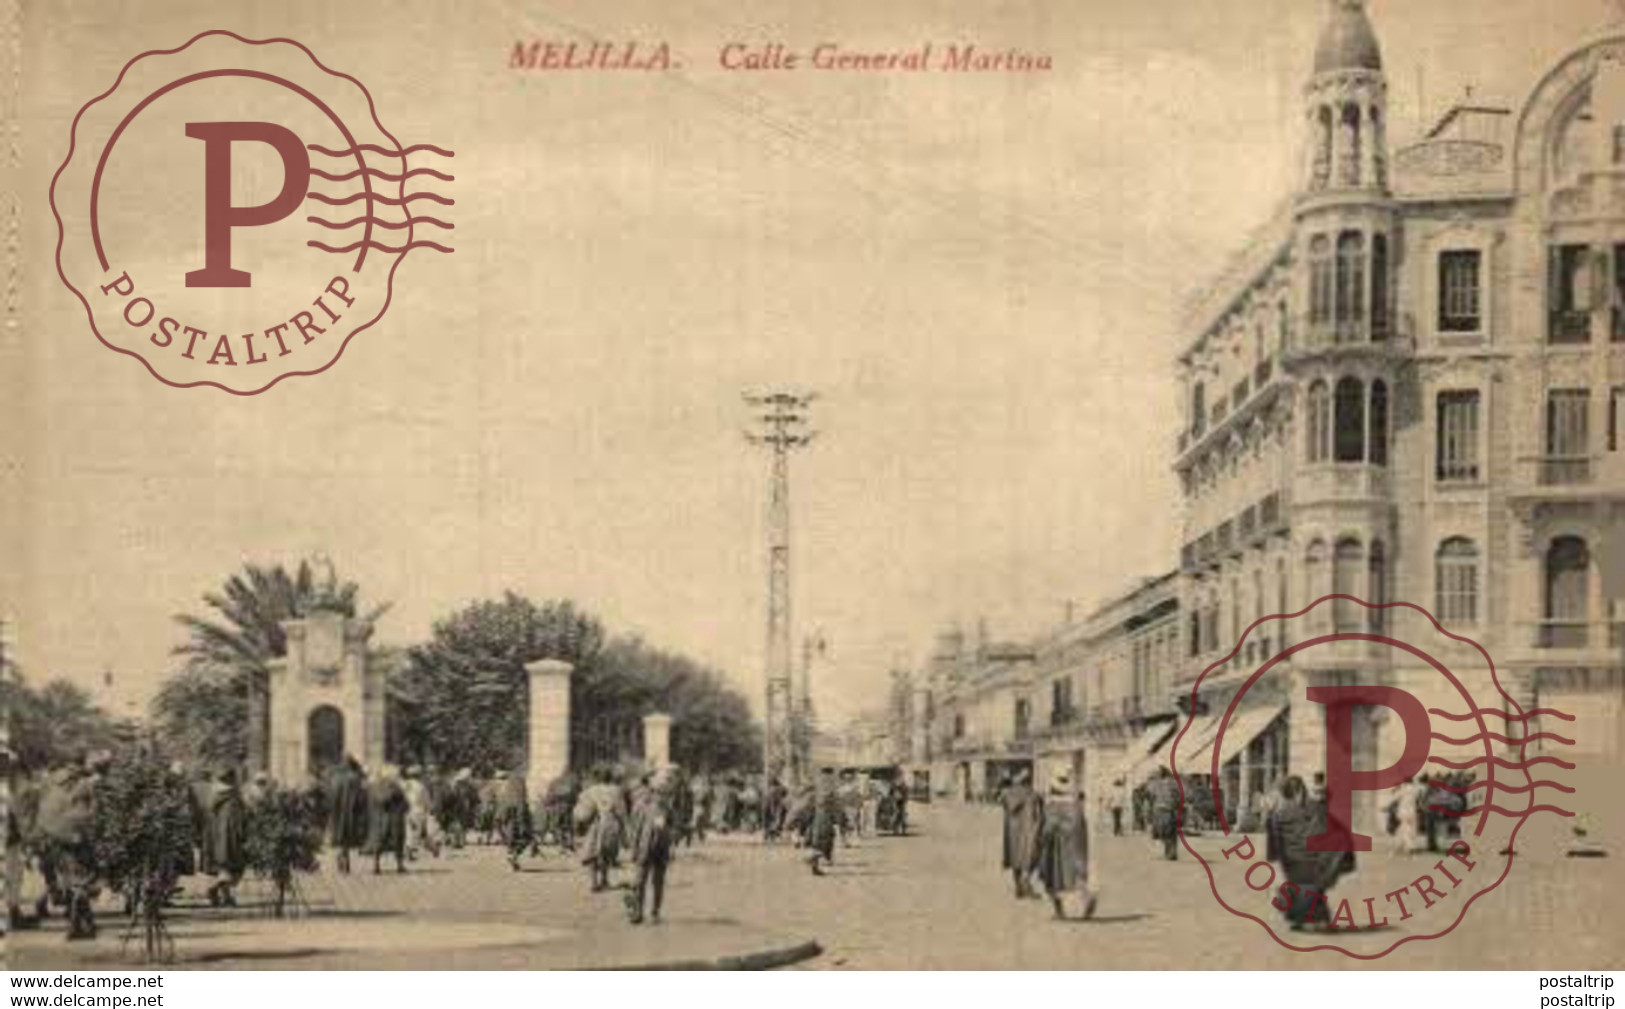 MELILLA. - CALLE GENERAL DE LA MARINA - Melilla